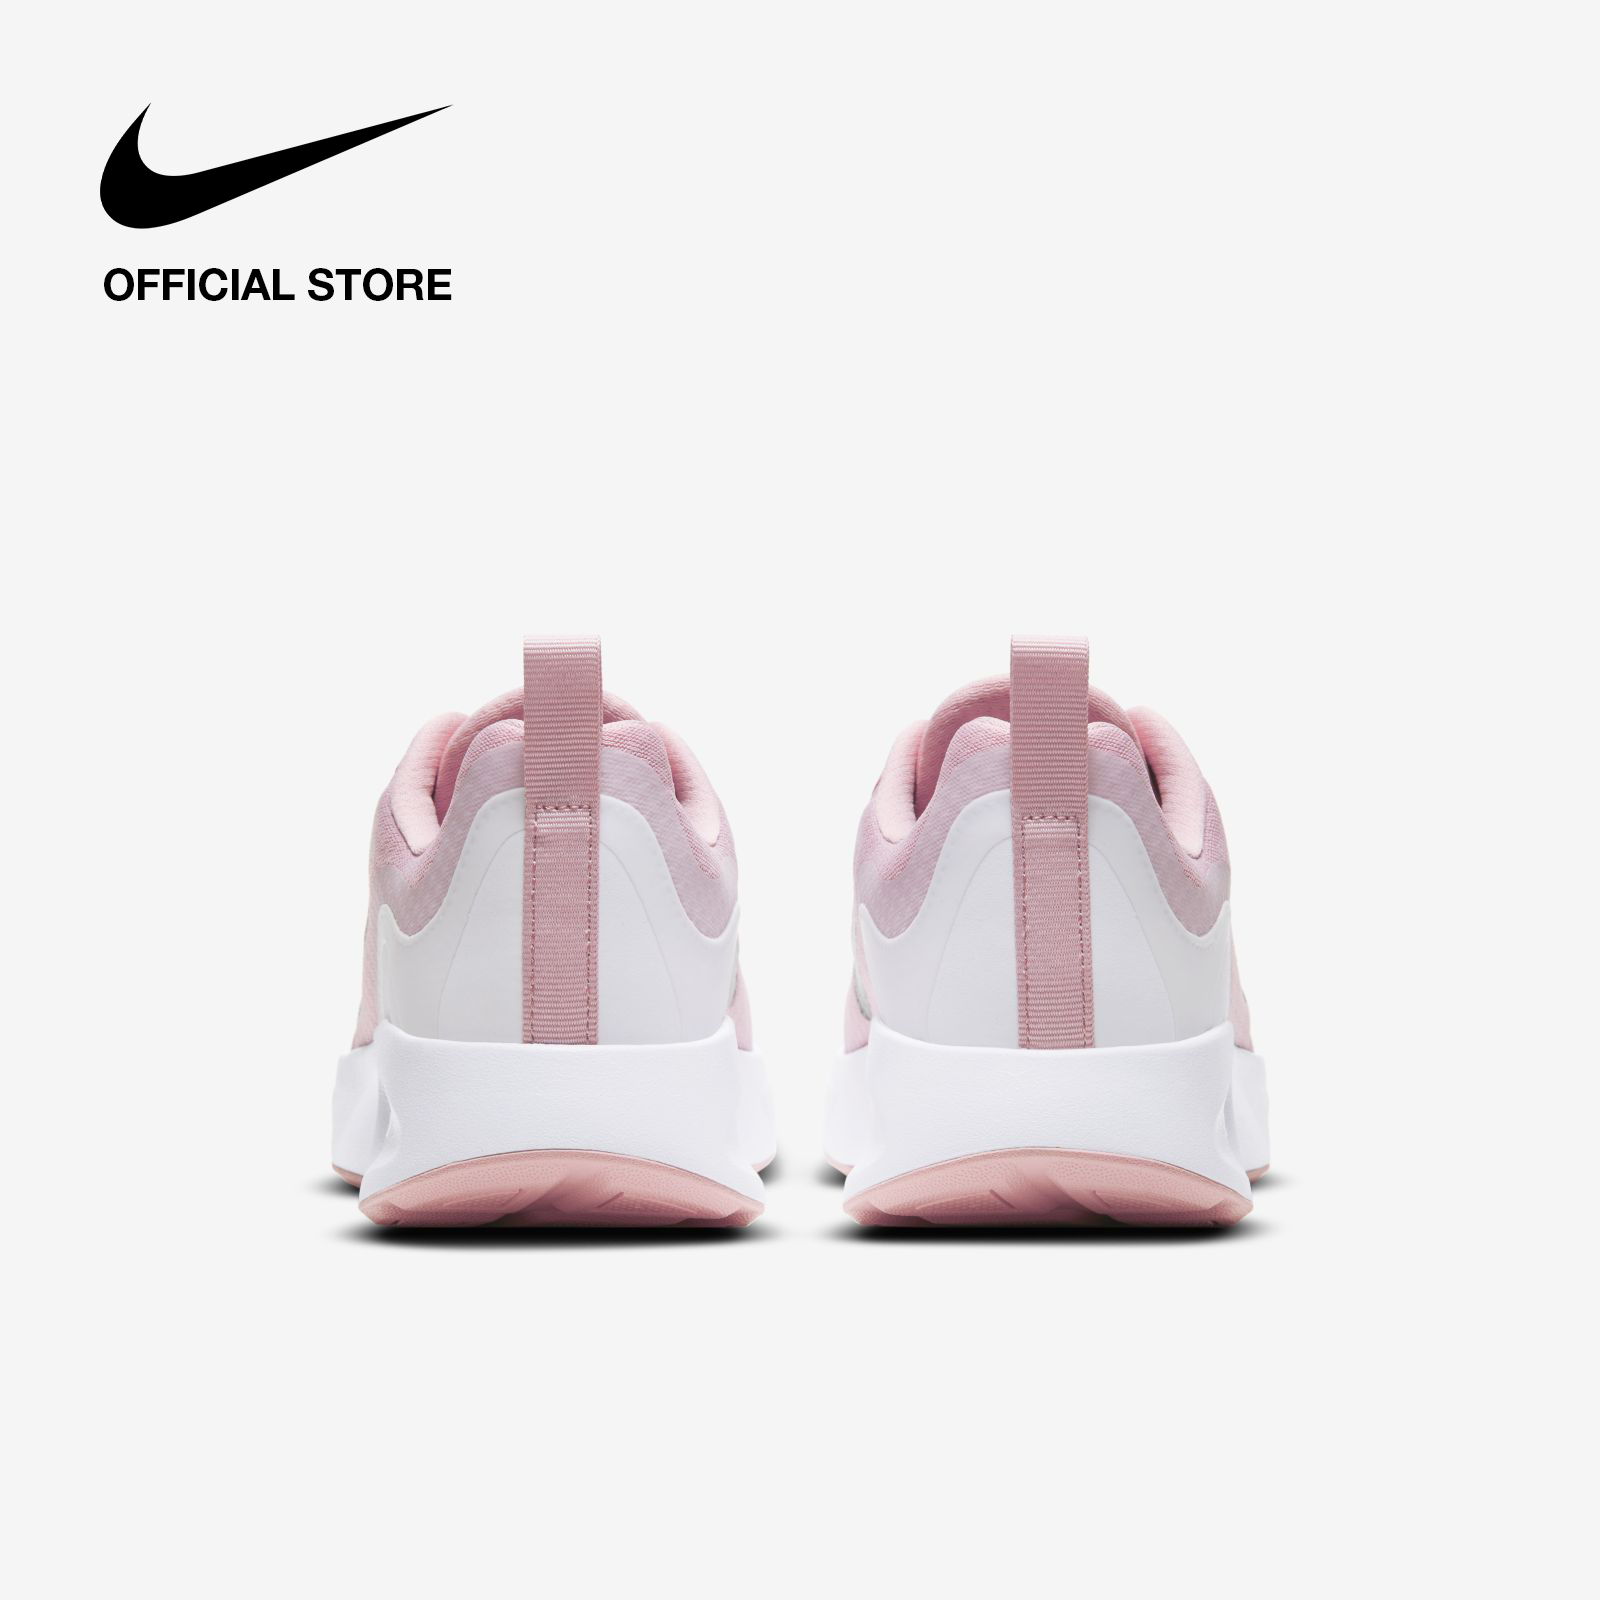 Nike Women's Wearallday Shoes - Pink ไนกี้ รองเท้าผู้หญิง แวร์ออลเดย์ - สีชมพู